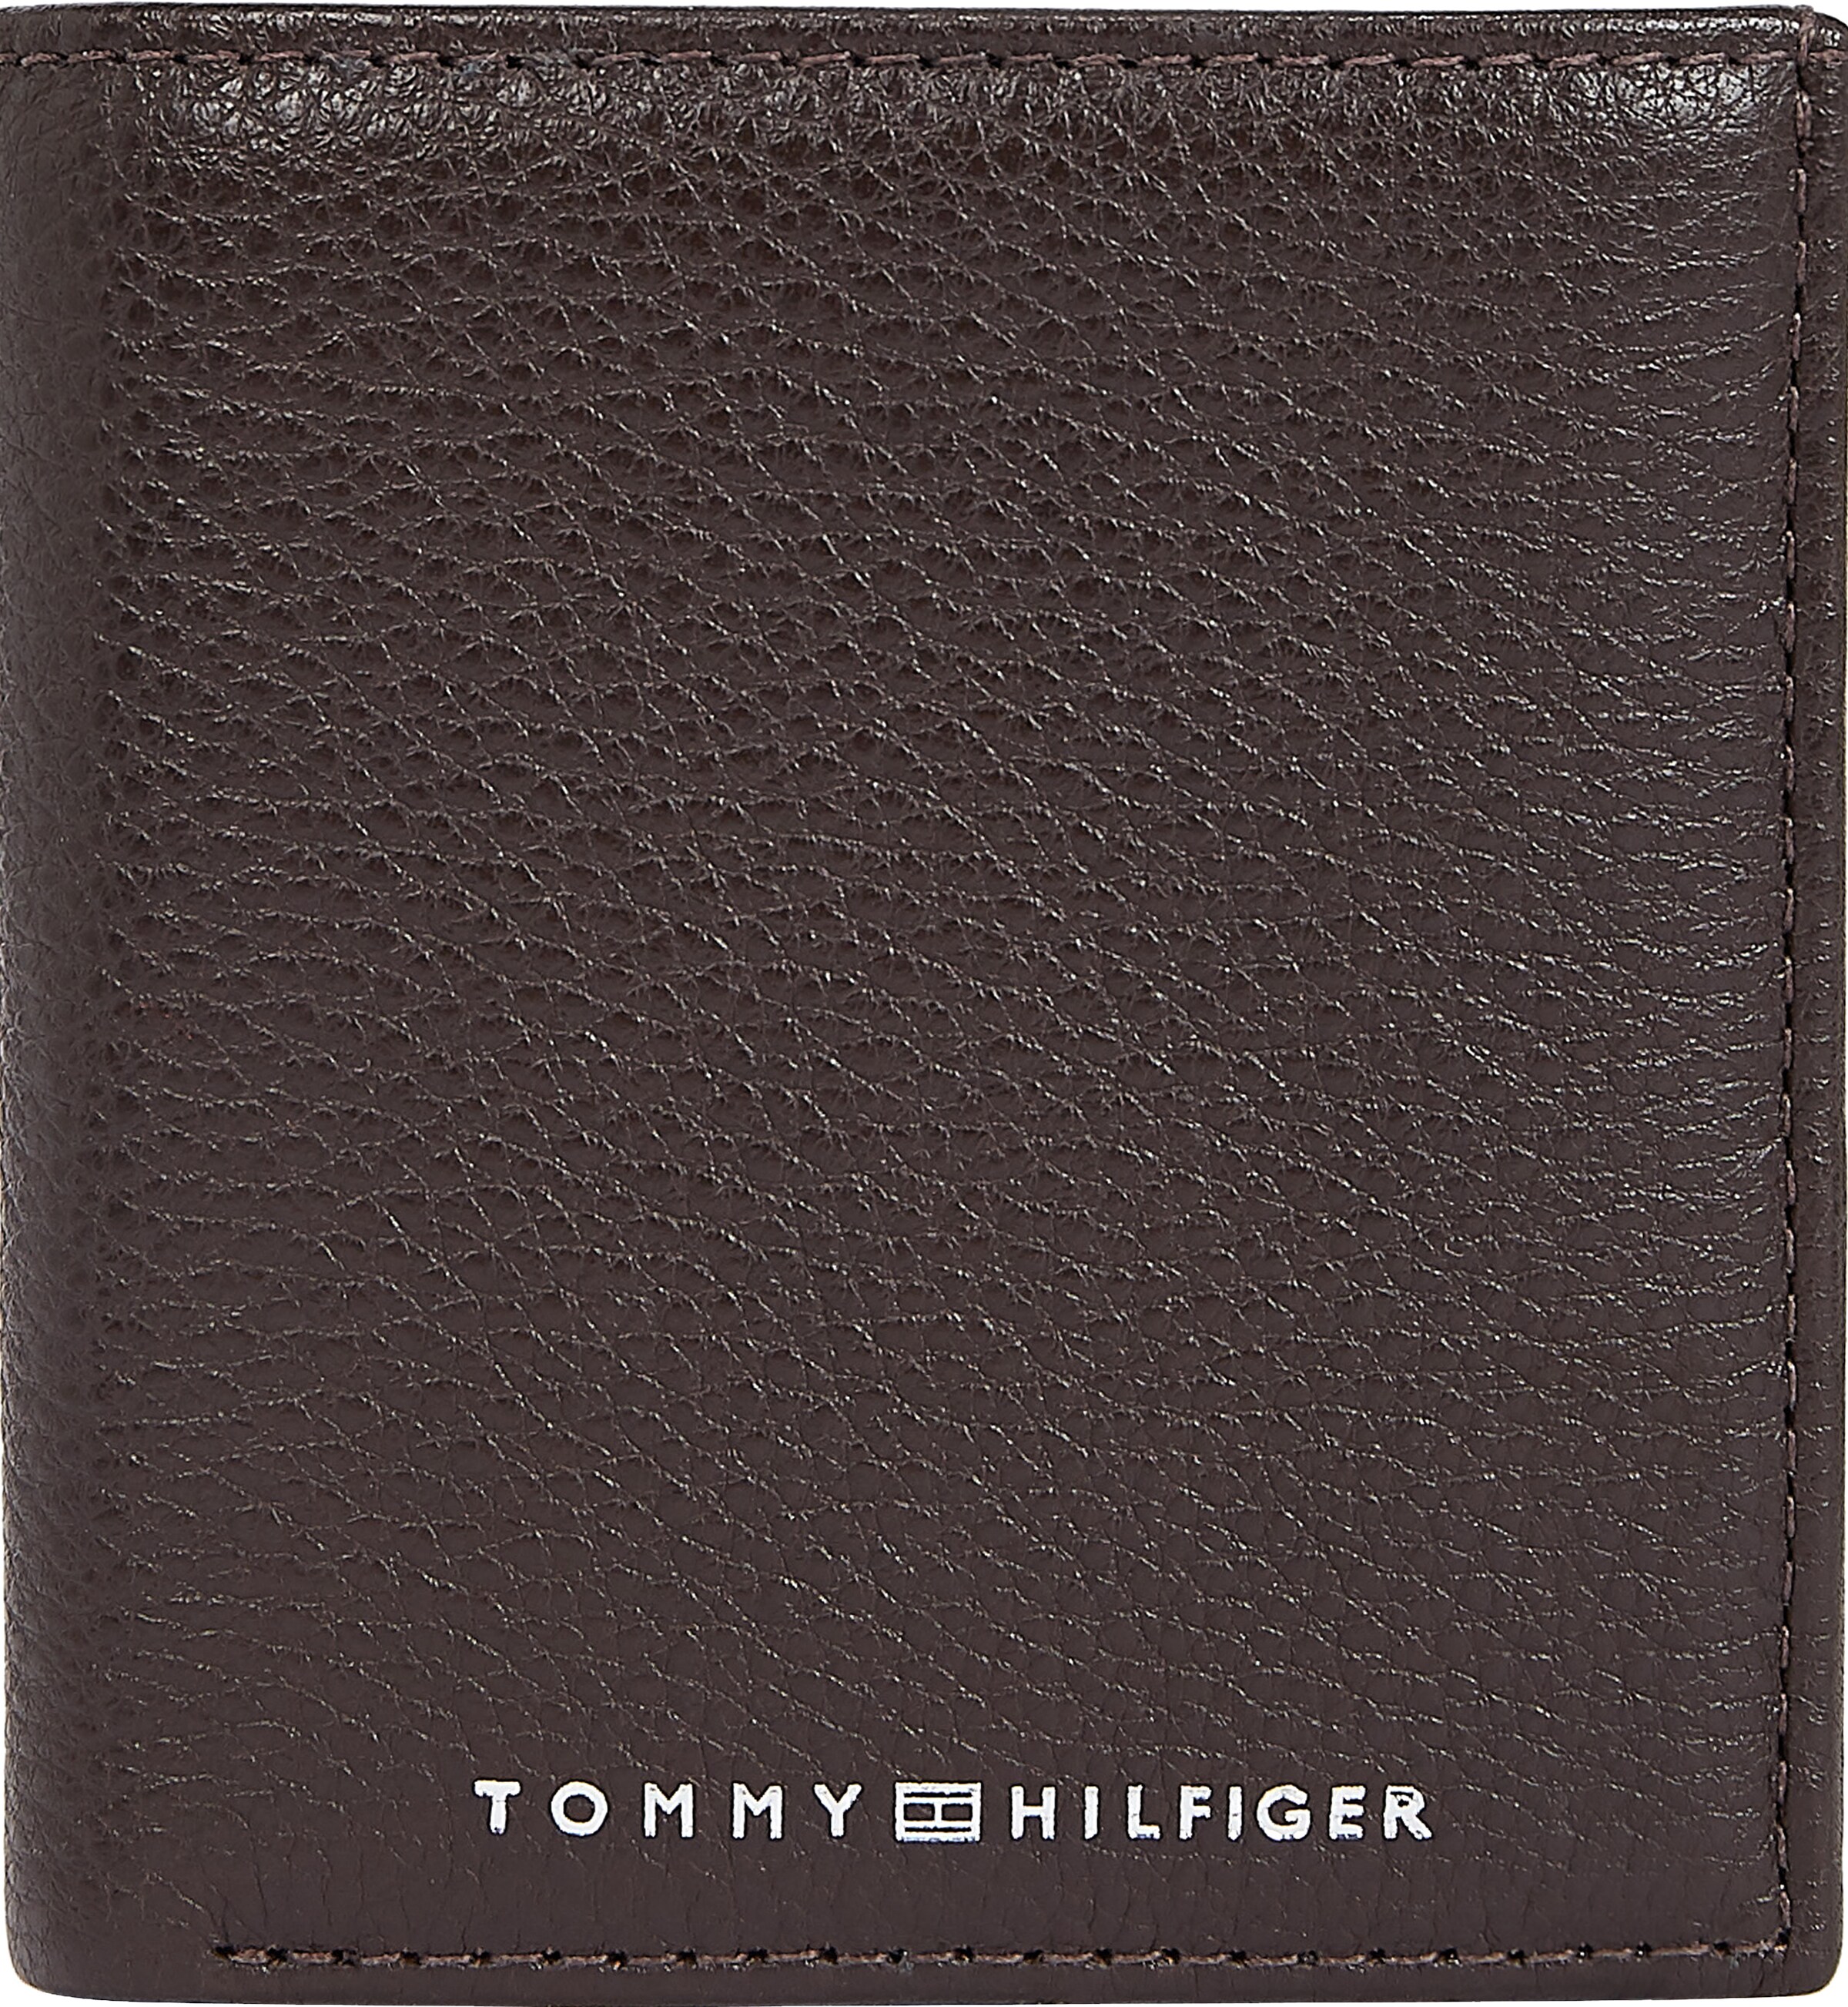 Männer Geldbörsen & Etuis TOMMY HILFIGER Portemonnaie in Dunkelbraun - KO80953